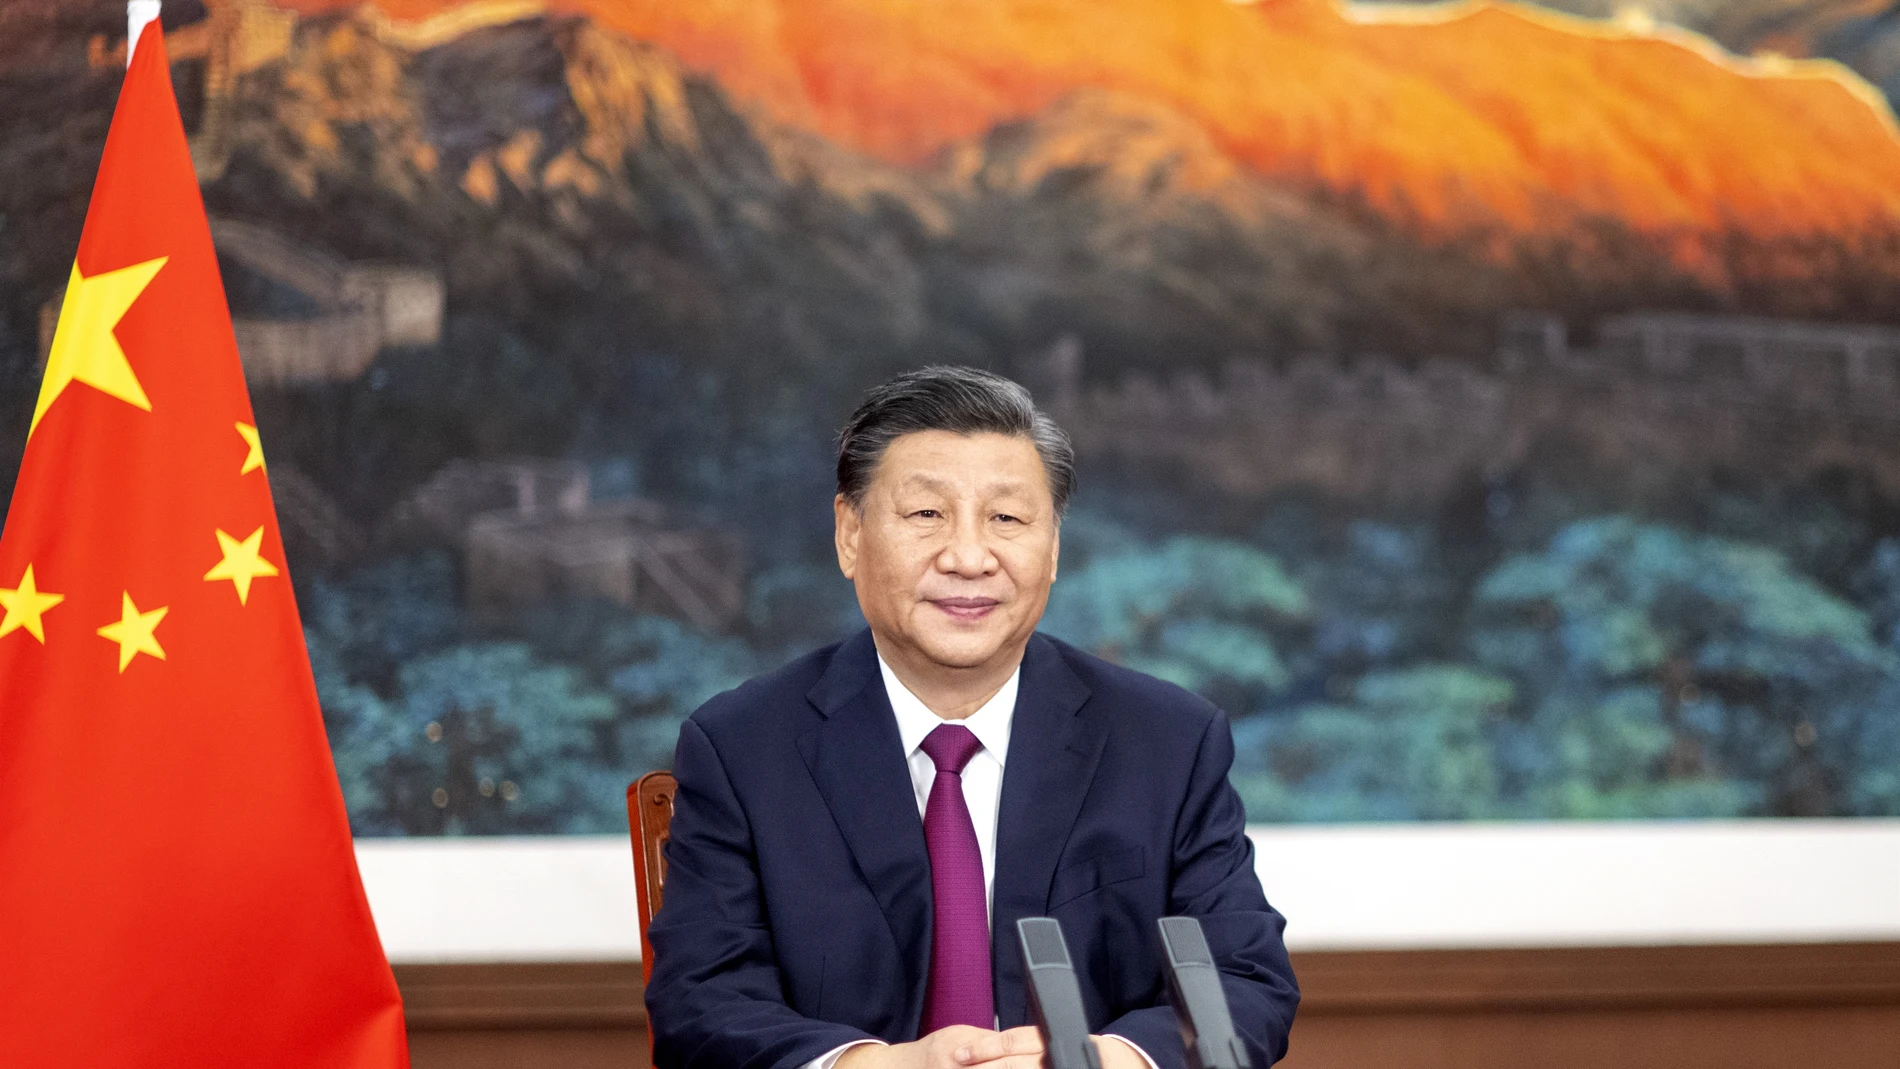 Xi Jinping, presidente de China LI XUEREN / XINHUA NEWS / CONTACTOPHOTO (Foto de ARCHIVO) 19/05/2022 ONLY FOR USE IN SPAIN